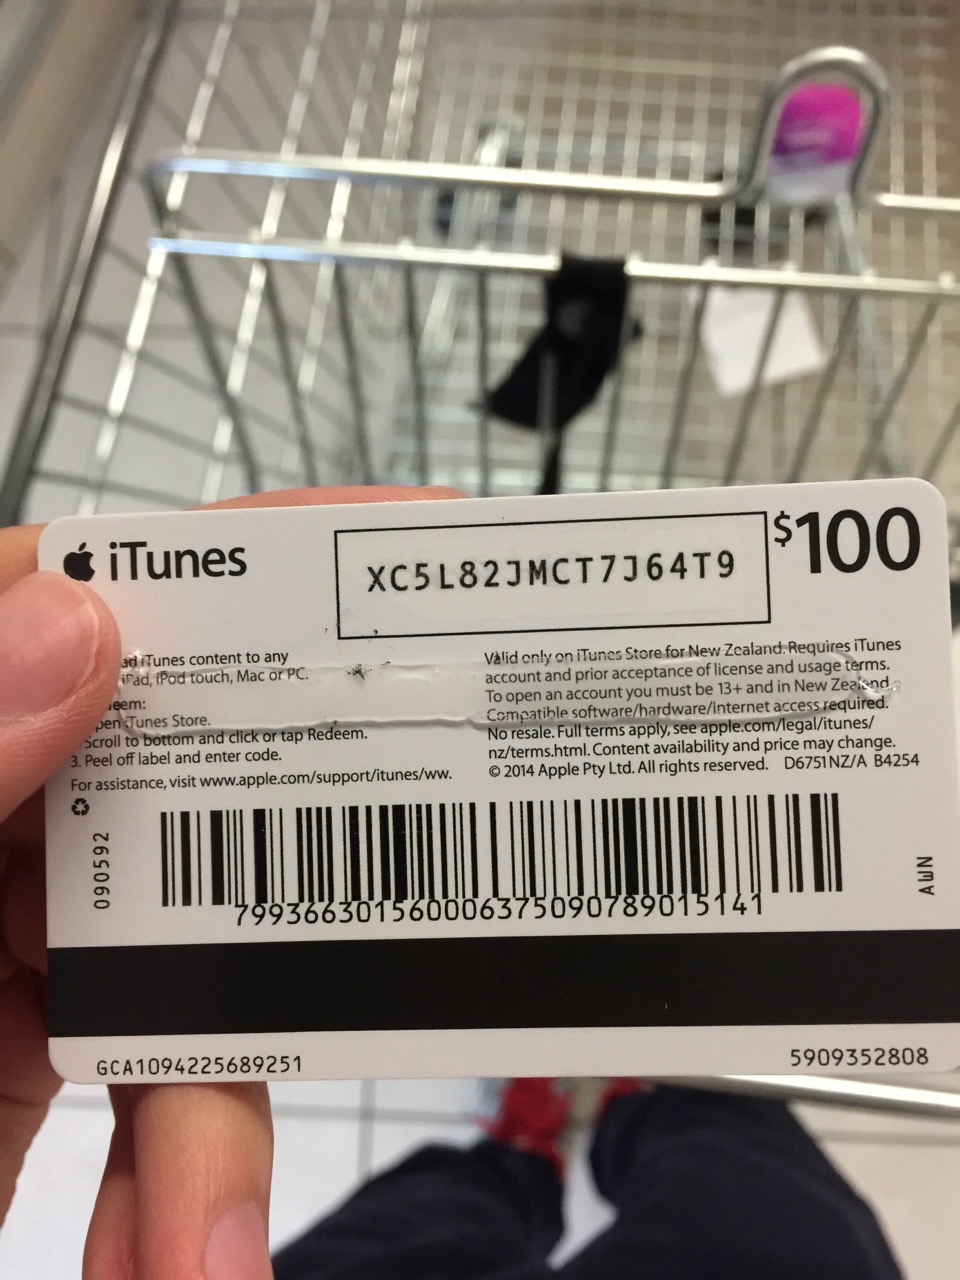 $100 iTunes